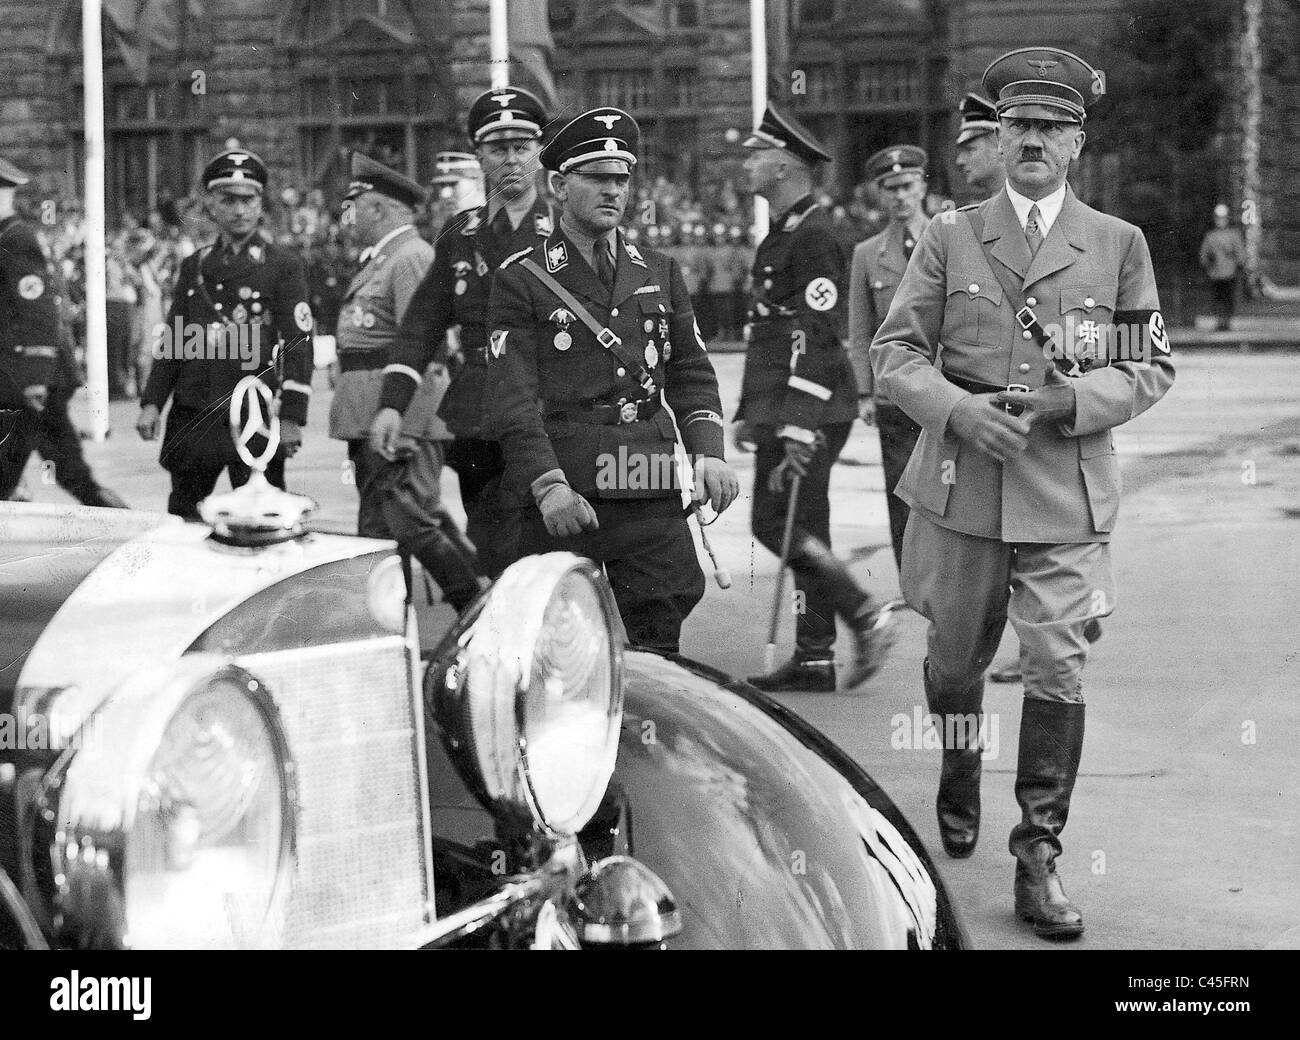 Julius Schaub, Sepp Dietrich, Heinrich Himmler and Adolf Hitler in Nuremberg, 1935 Stock Photo